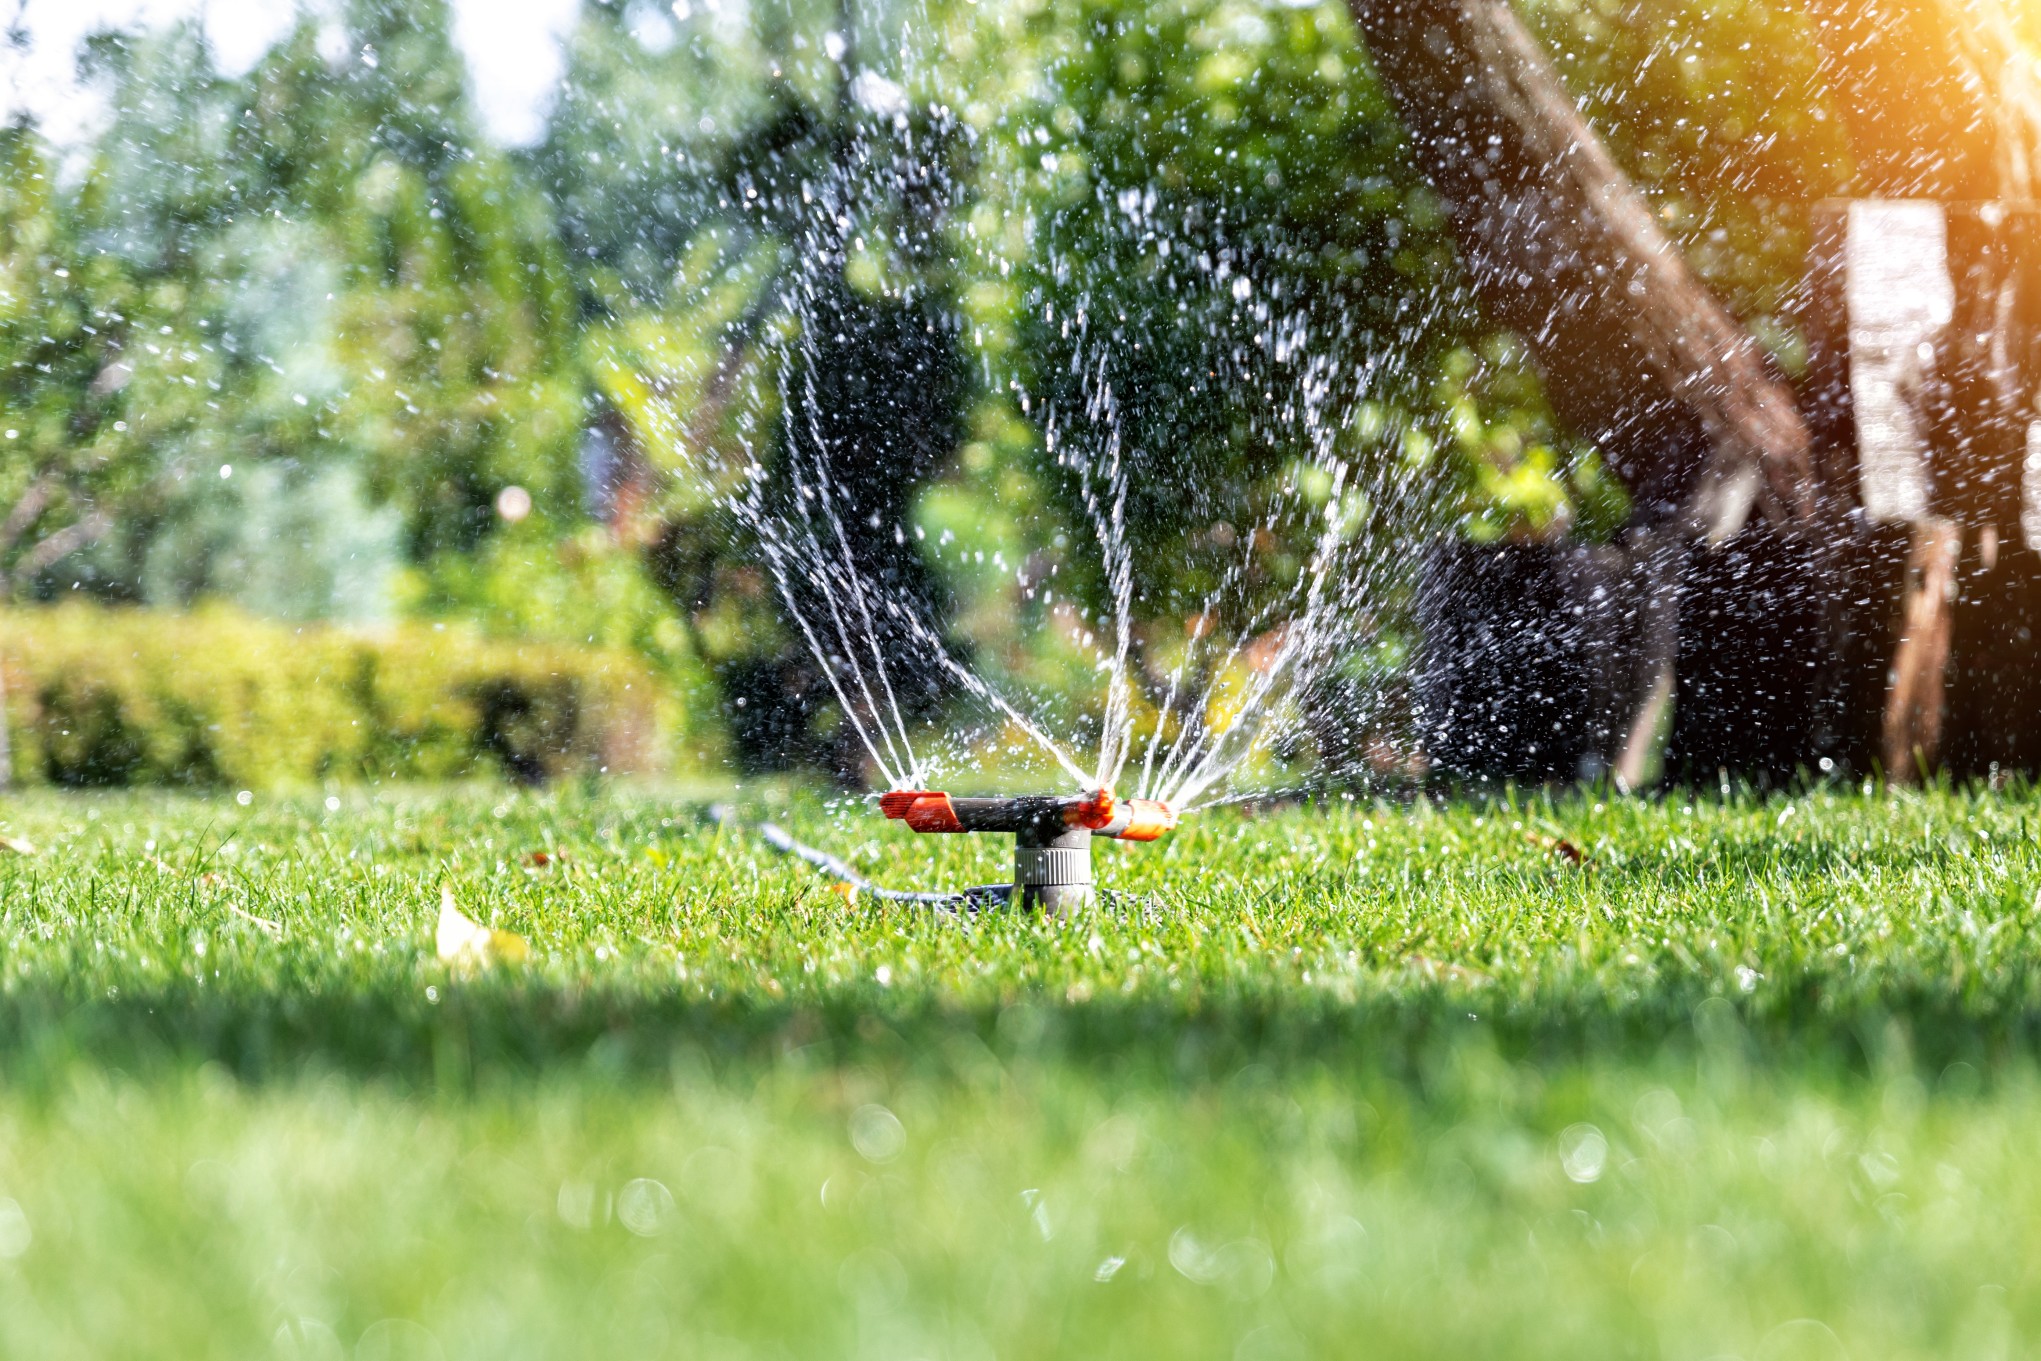 Eine Bewässerungsanlage für den Garten spart Zeit und Kosten. Foto gorlovkv via Twenty20